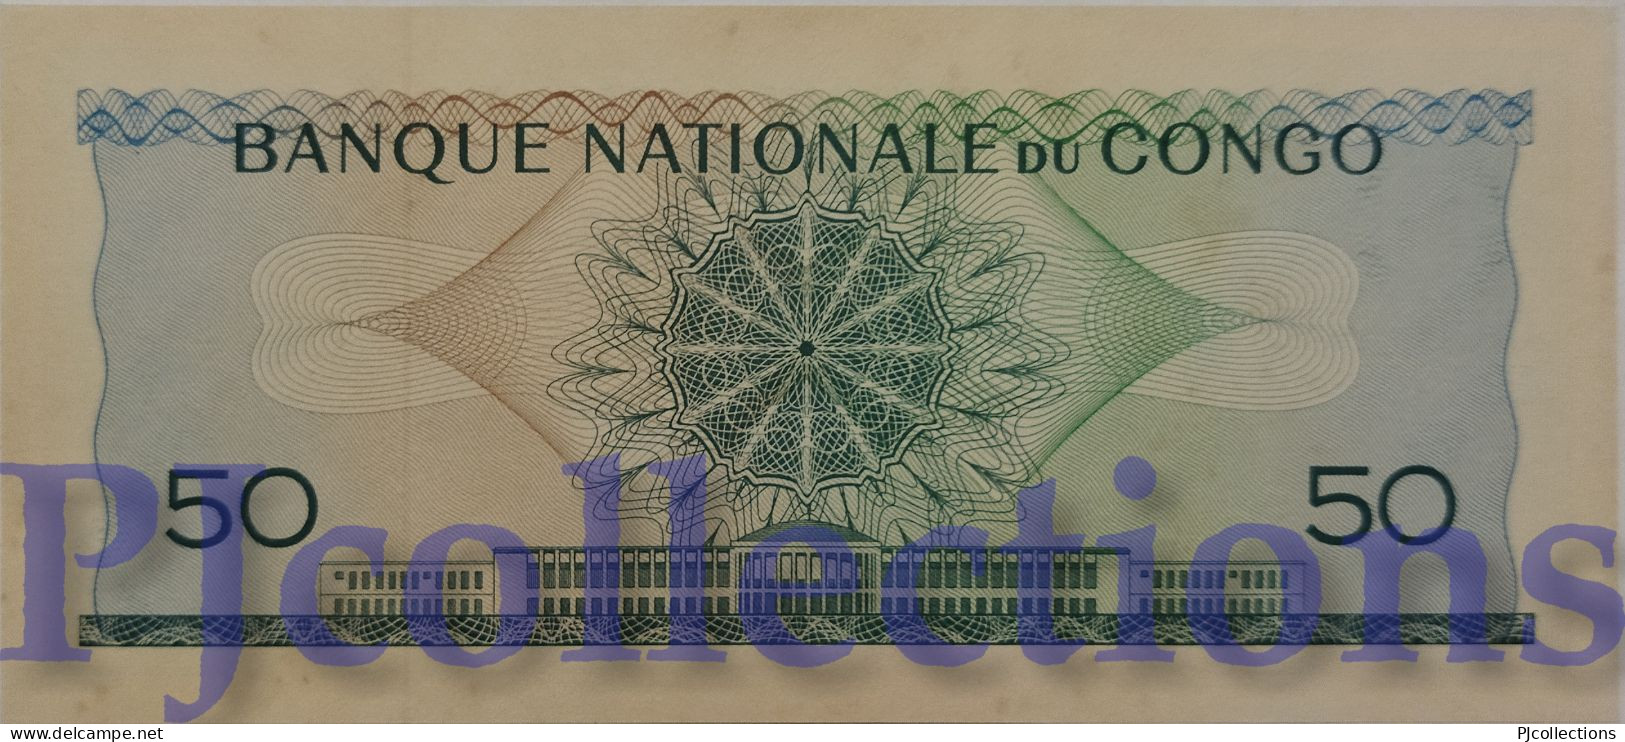 CONGO DEMOCRATIC REPUBLIC 50 FRANCS 1962 PICK 5a UNC - Democratic Republic Of The Congo & Zaire